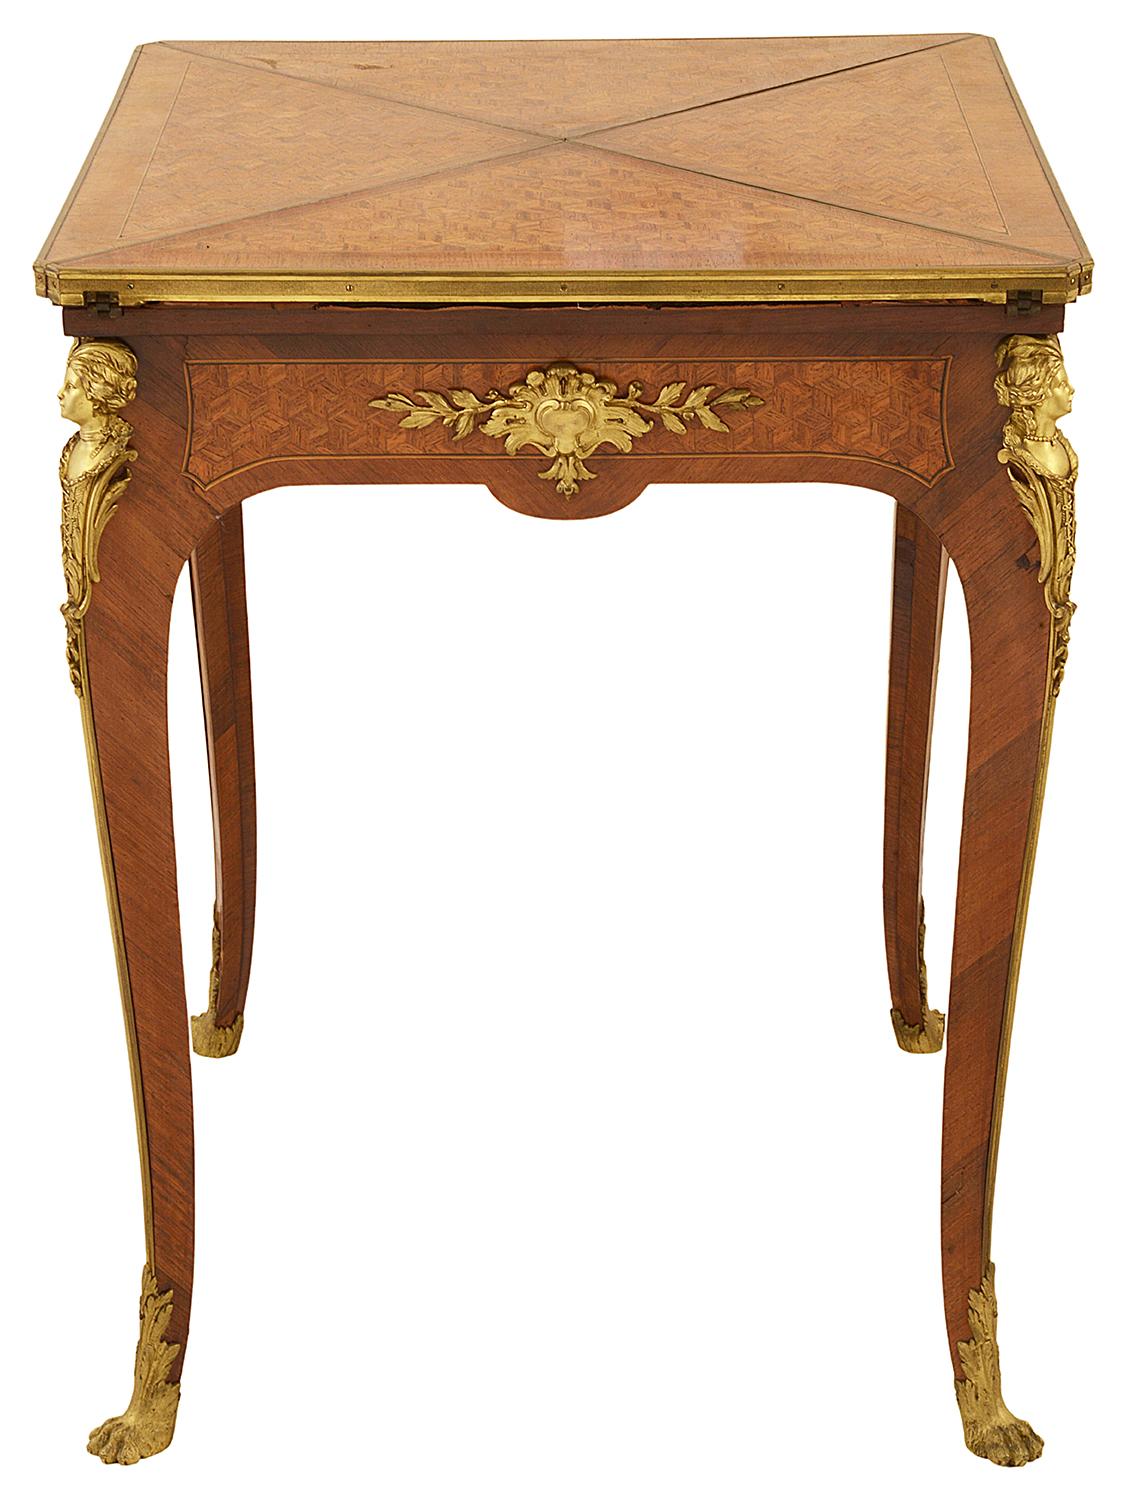 Eine feine Qualität späten 19. Jahrhundert Französisch Louis XVI-Stil Parkett eingelegt Umschlag Kartentisch. Mit wunderschönen vergoldeten Ormolu-Formen, Monopodien und Klauenfußbeschlägen. Die geviertelte Klappe lässt sich öffnen und gibt den